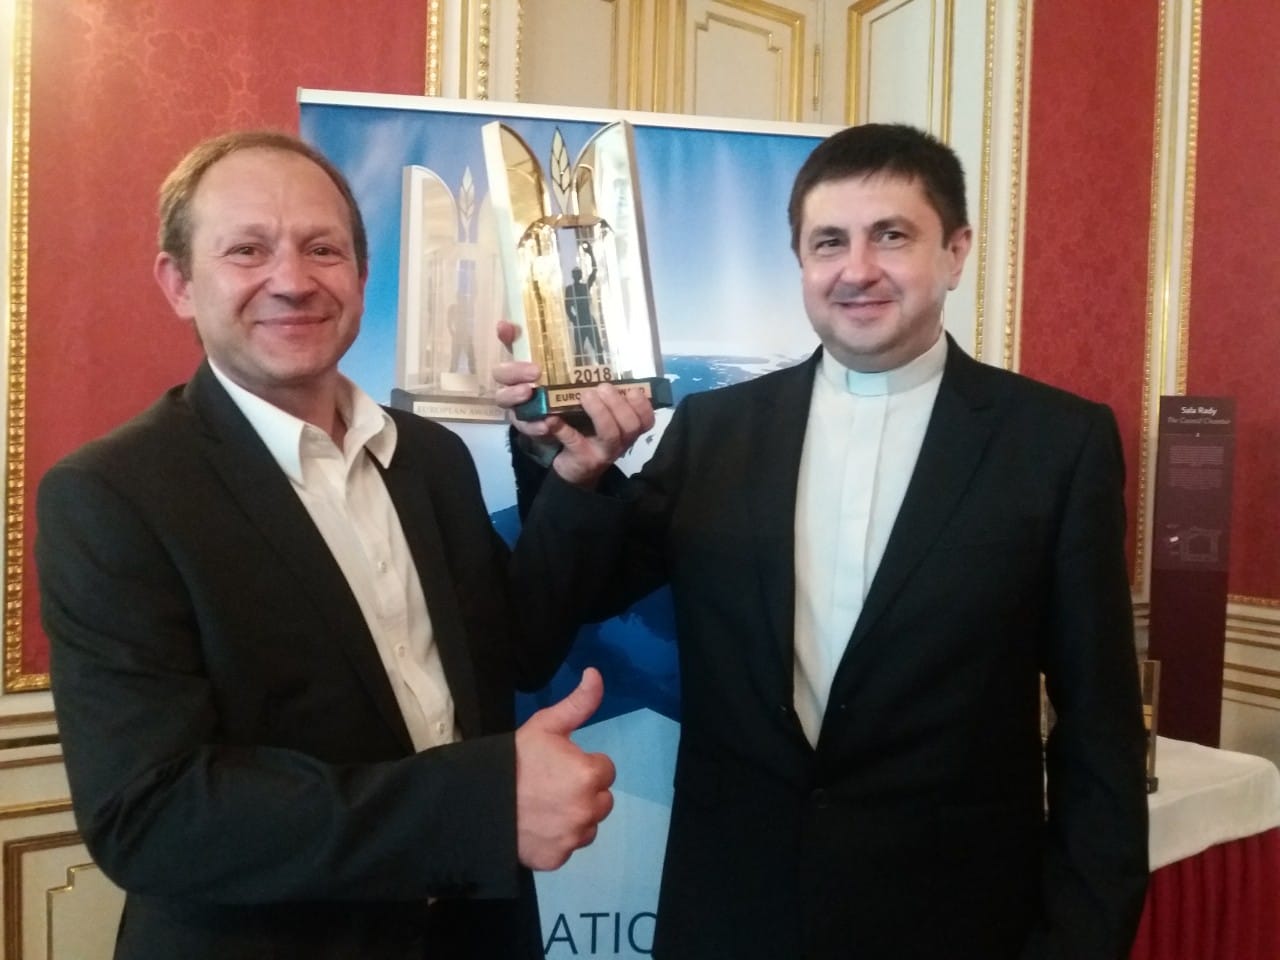 Храм свв. Володимира і Ольги отримав головний приз на ХХІІІ Міжнародному будівельному конкурсі «European Award 2018» у Варшаві!